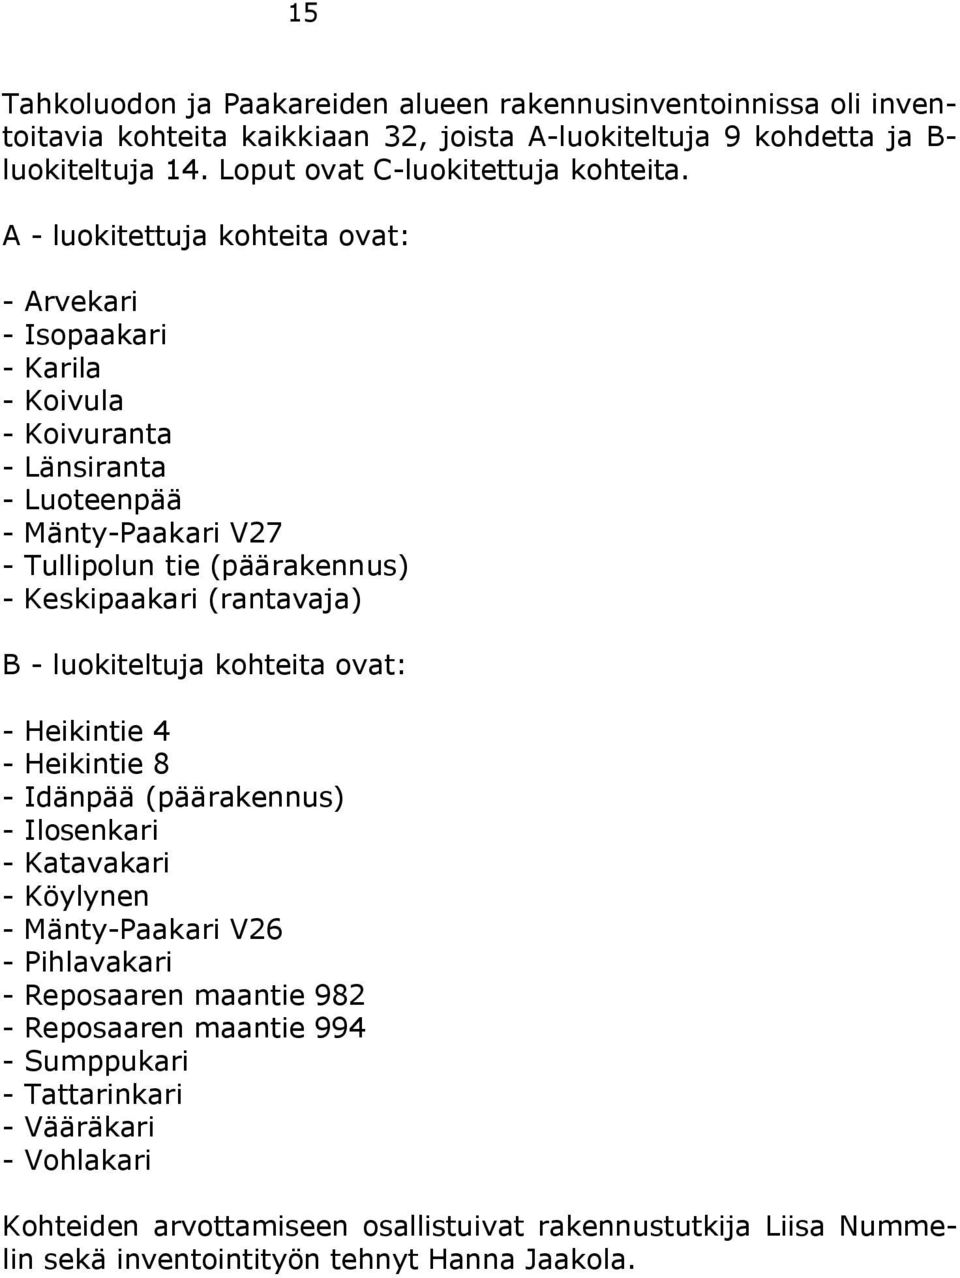 A - luokitettuja kohteita ovat: - Arvekari - Isopaakari - Karila - Koivula - Koivuranta - Länsiranta - Luoteenpää - Mänty-Paakari V27 - Tullipolun tie (päärakennus) - Keskipaakari